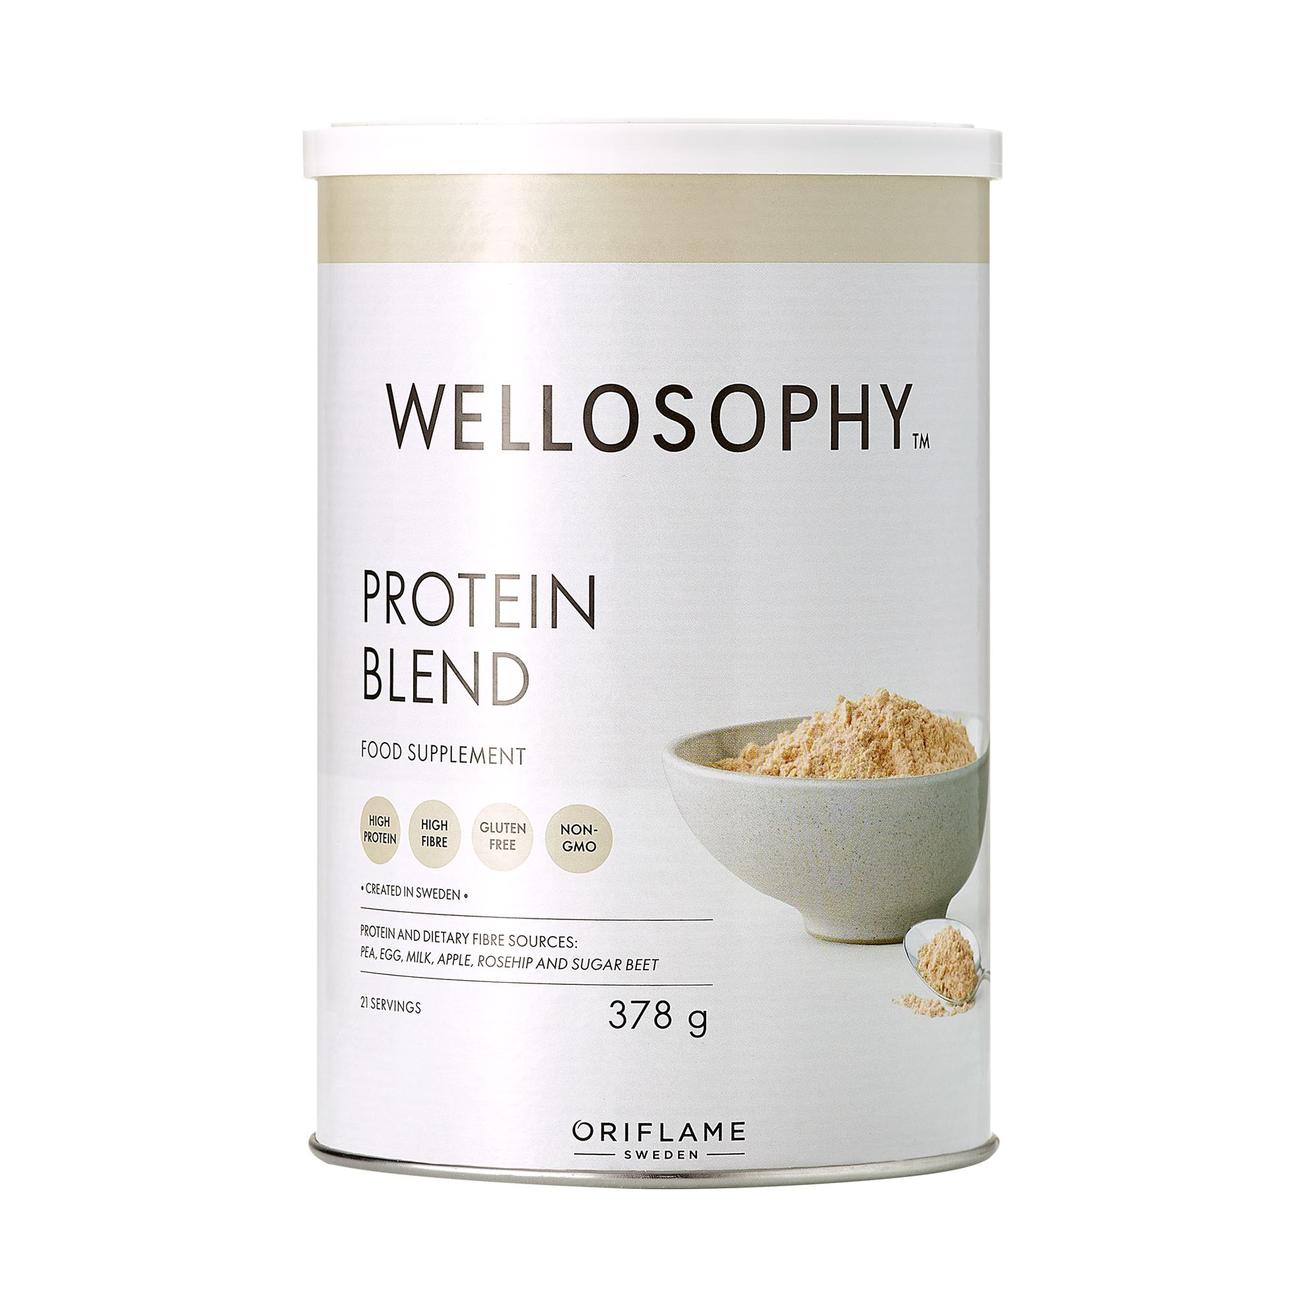 Wellosophy Protein Blend fehérjepor kínálat, 14499 Ft a Oriflame -ben